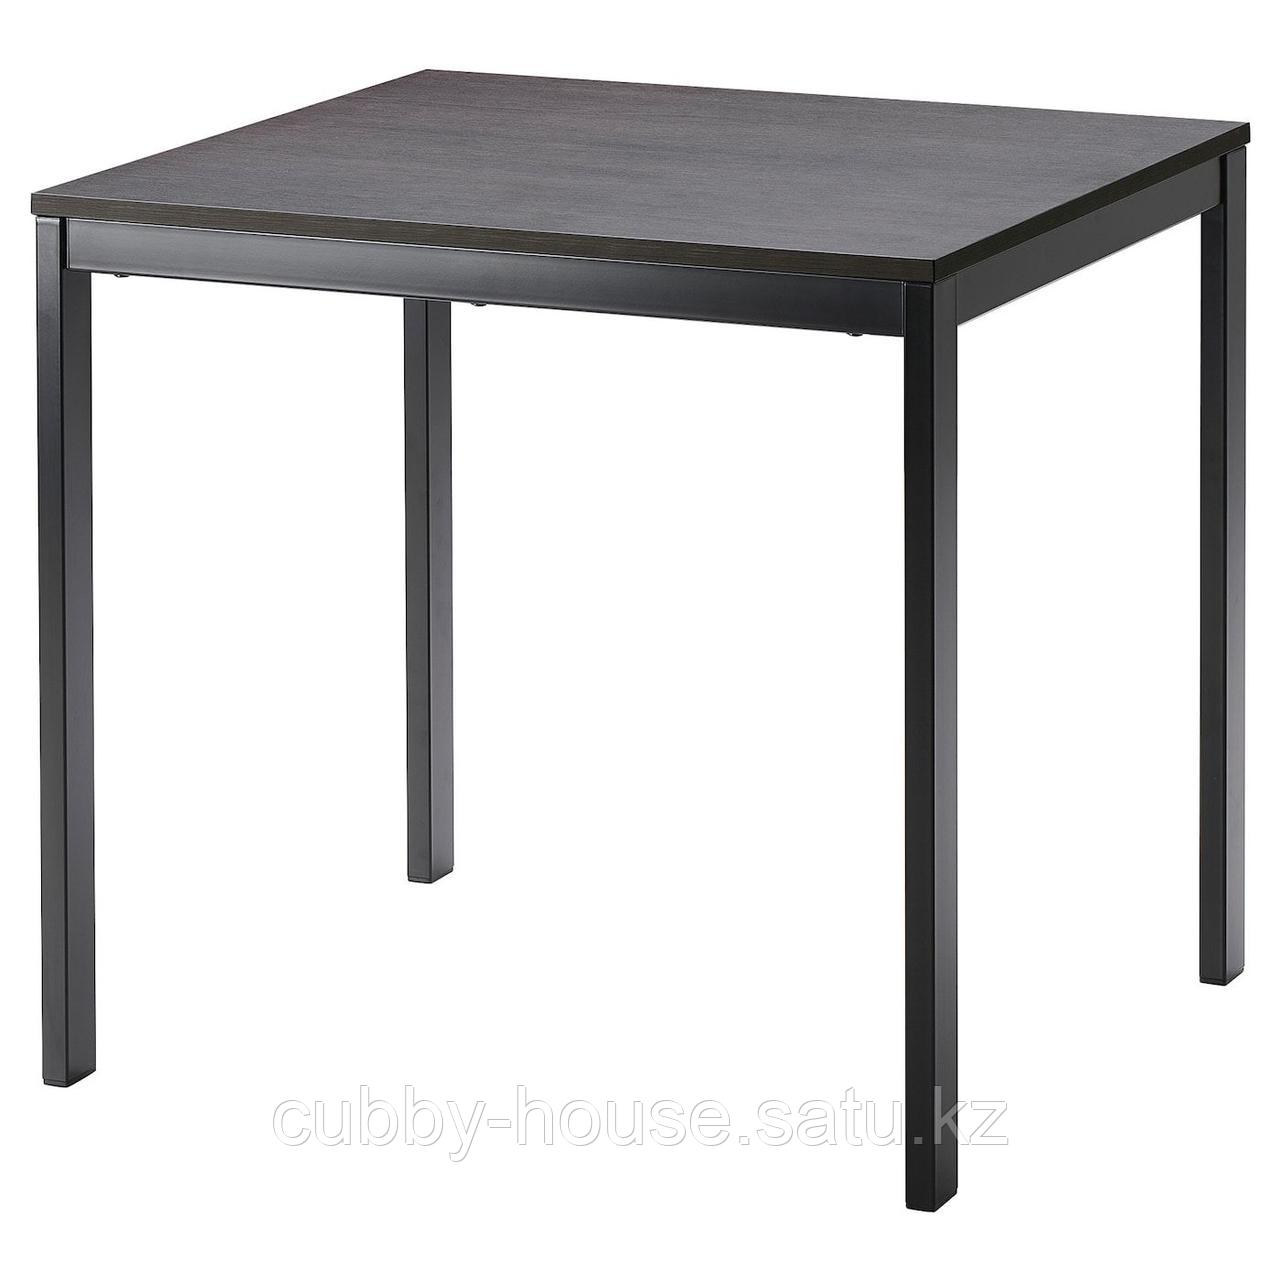 ВАНГСТА Раздвижной стол, черный, темно-коричневый, 80/120x70 см